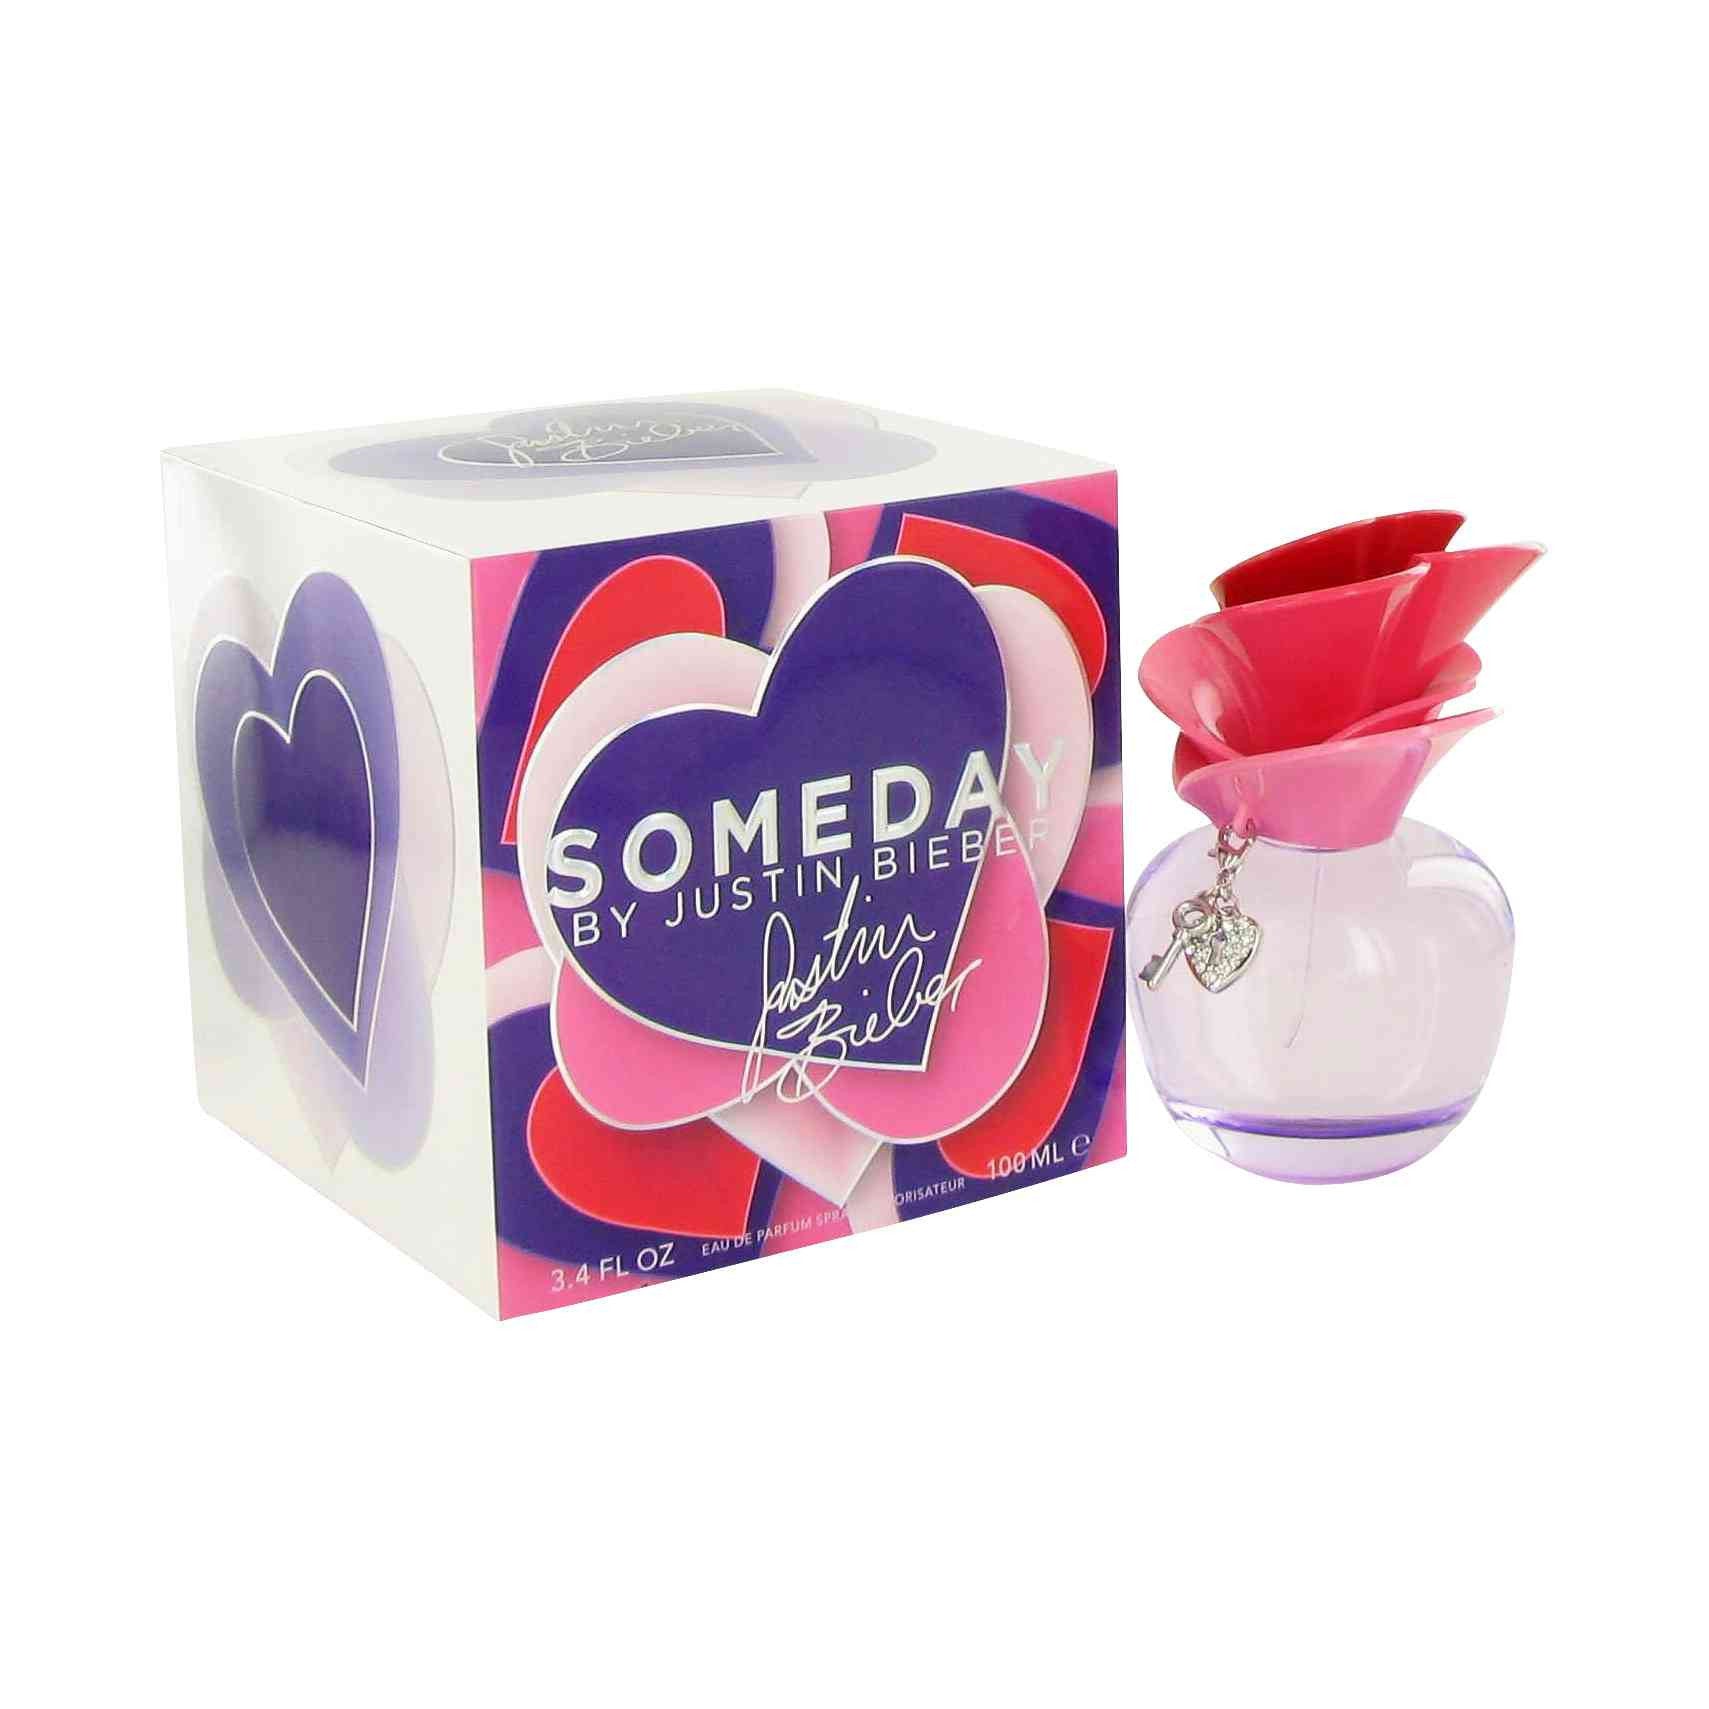 Someday Fragrances for Women